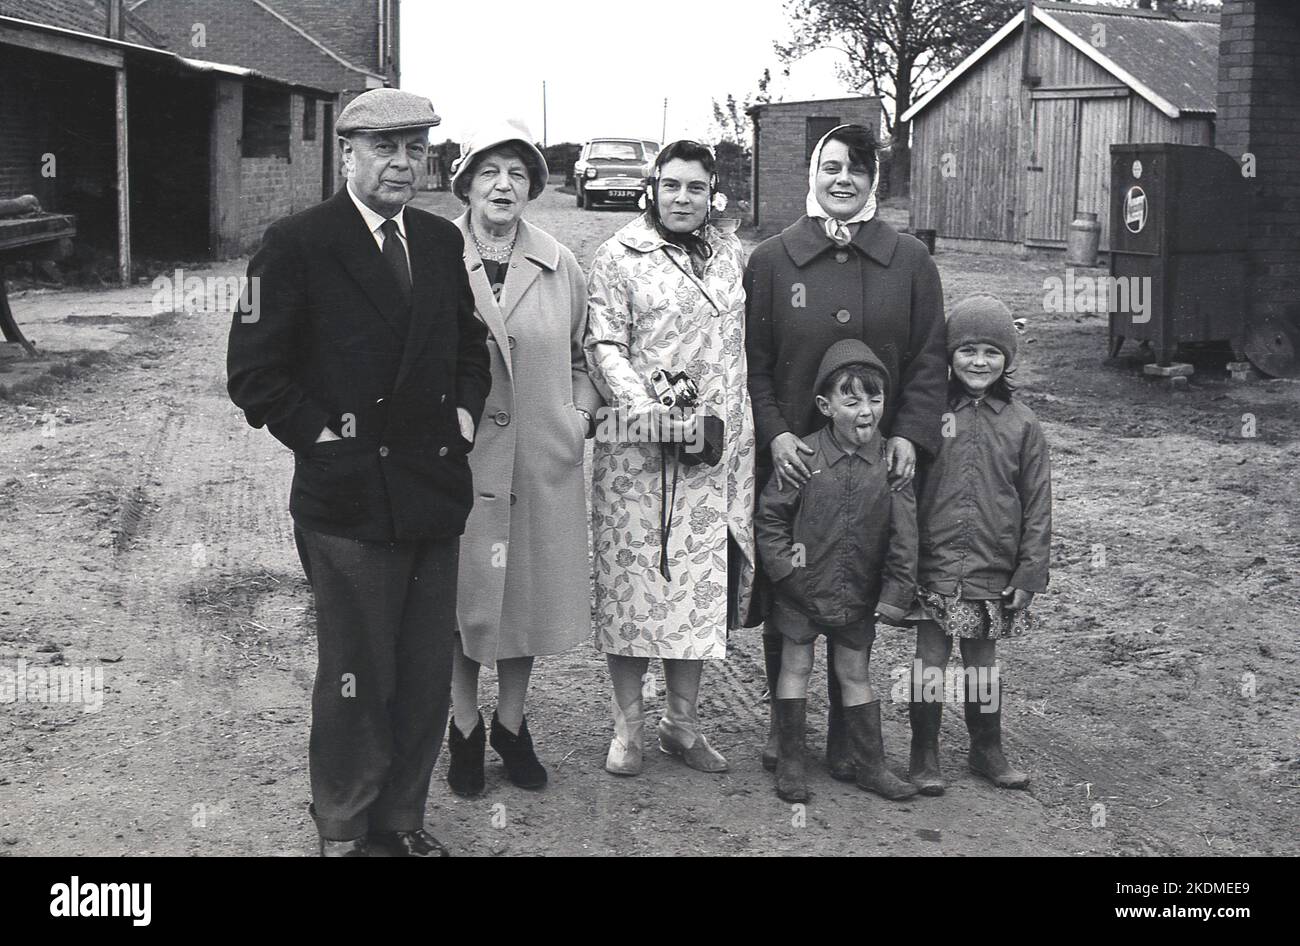 1960s, storico, in piedi insieme per una foto in un cortile, una famiglia, due nonni, una madre più la sua amica e due bambini piccoli, in una visita ad una fattoria, il ragazzo non impressionato..Tongue out,,,YUK! Inghilterra, Regno Unito. Foto Stock